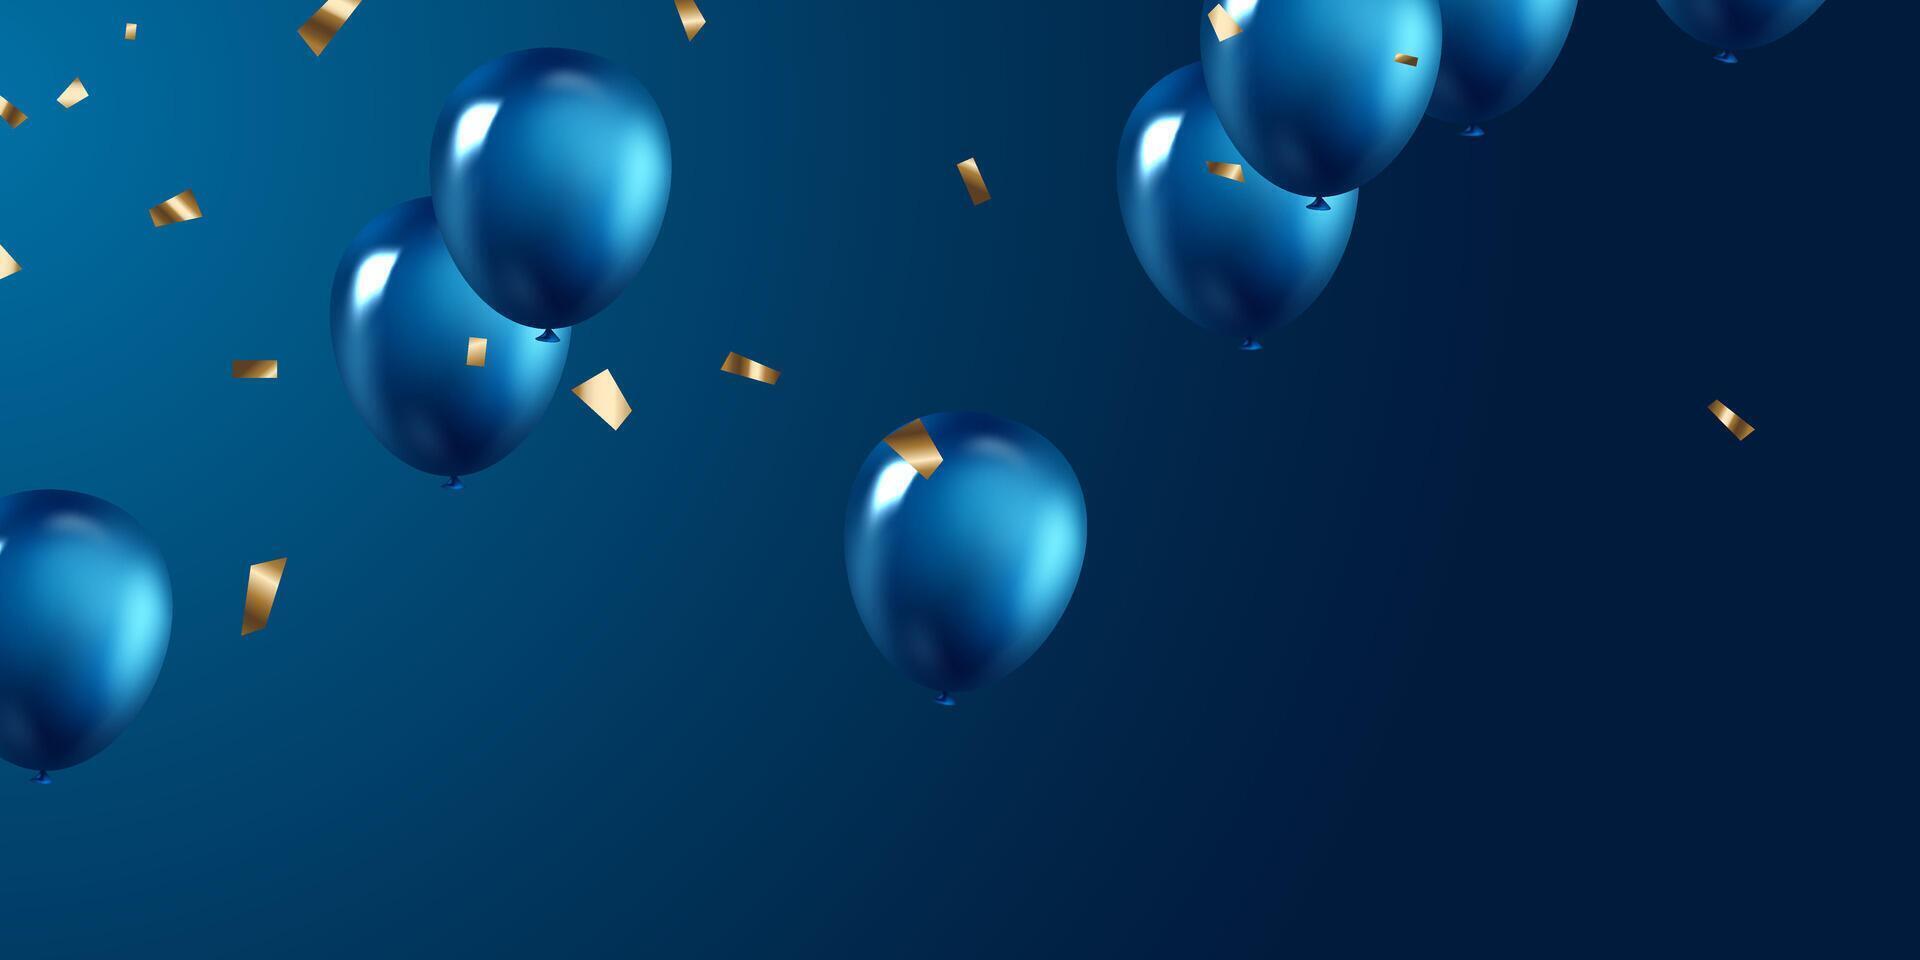 viering achtergrond met prachtig geregeld blauw ballonnen. 3dvector illustratie ontwerp vector